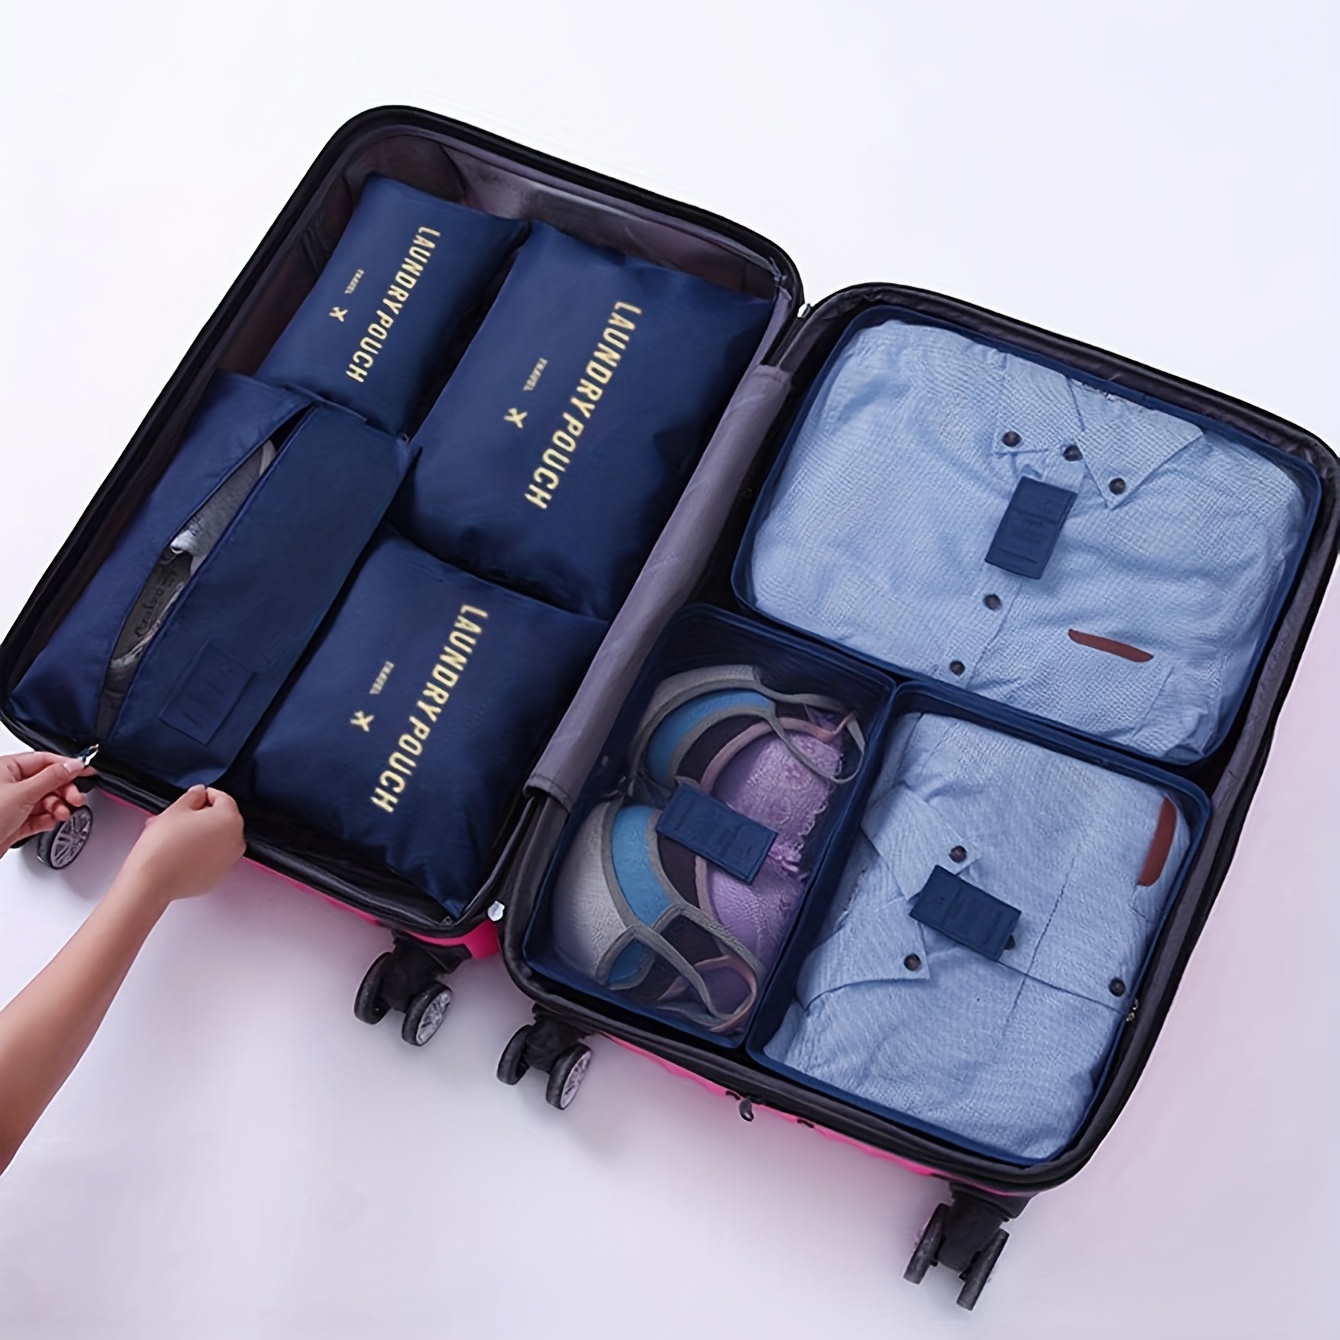 Cubos de embalaje para viajes, 8 cubos de viaje, organizador de maleta  plegable, bolsa de almacenamiento de equipaje ligera (color azul)